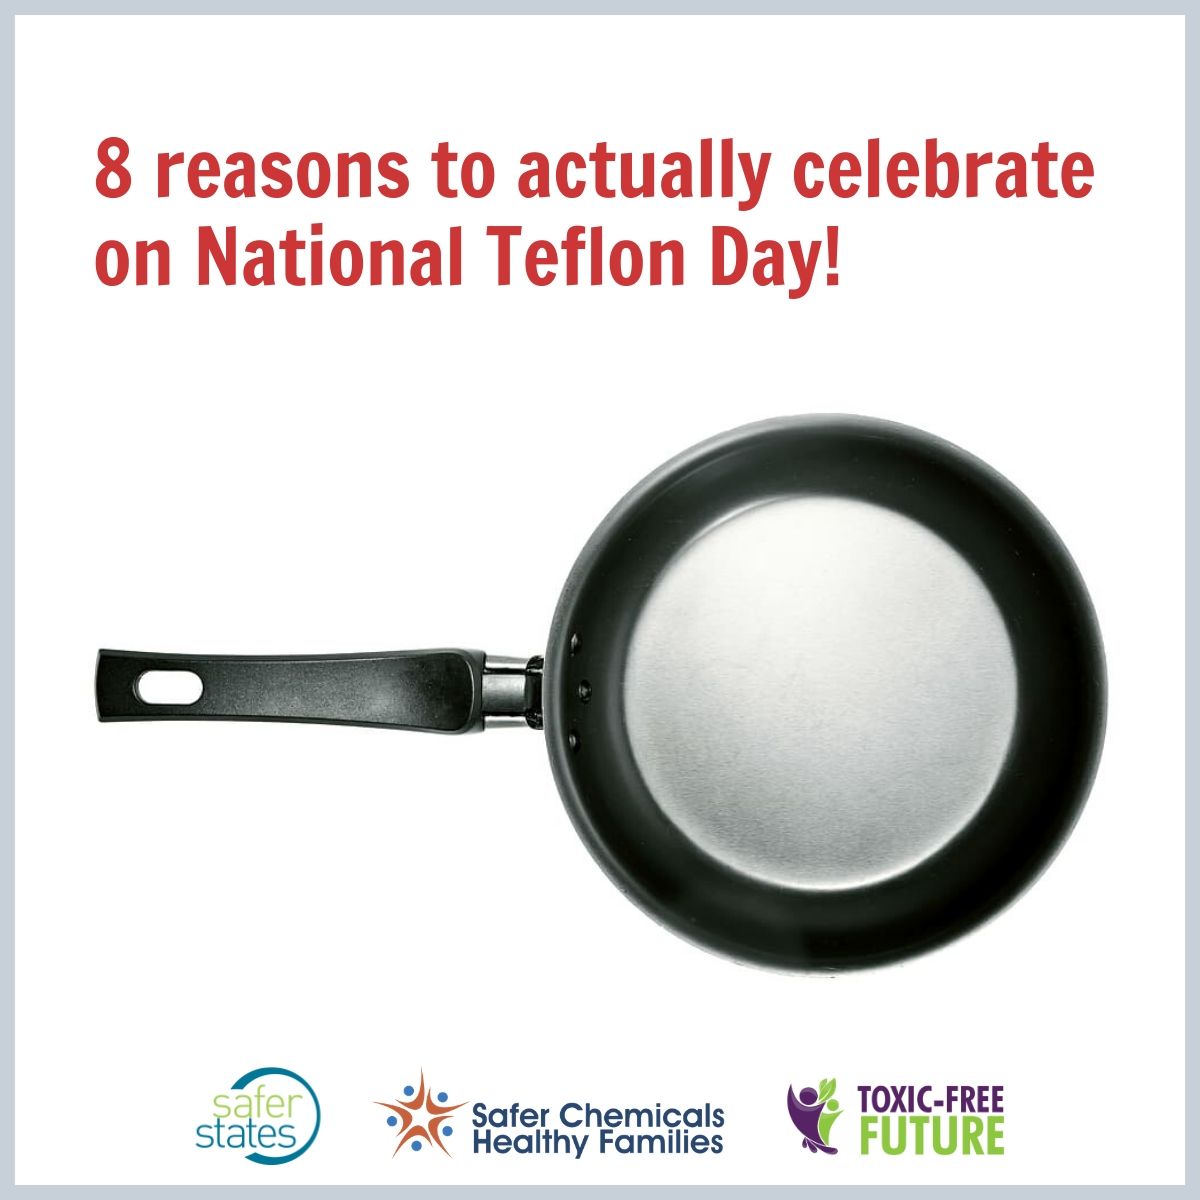 Eight reasons to actually celebrate on National Teflon Day - Toxic-Free Future